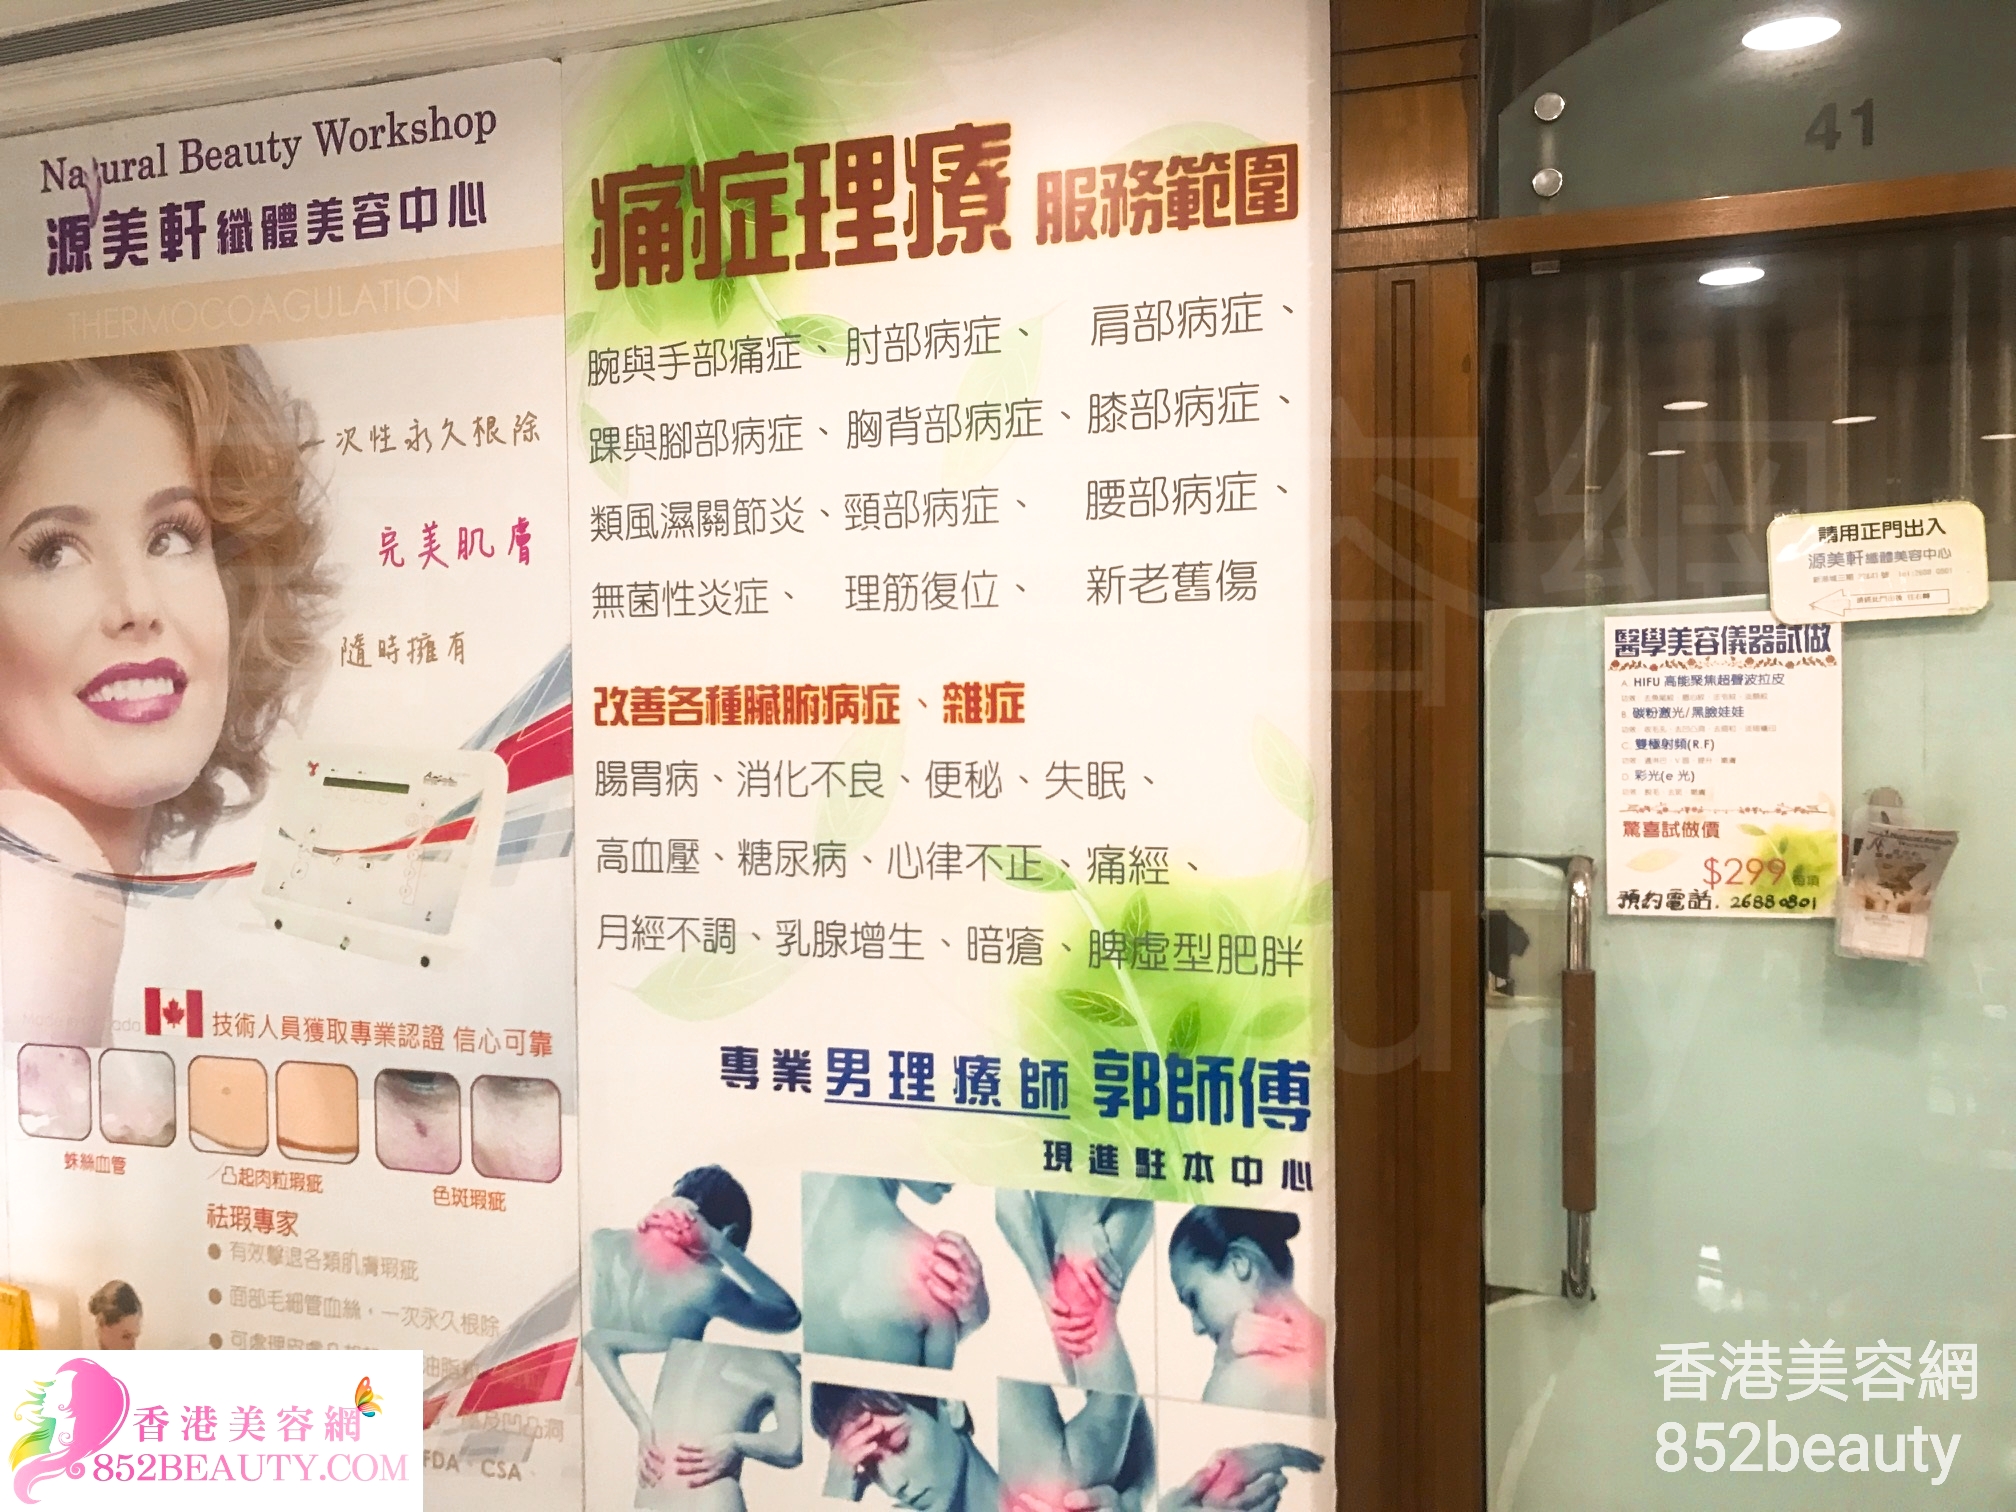 面部護理: 源美軒纖體美容中心（新港城） Natural Beauty Workshop